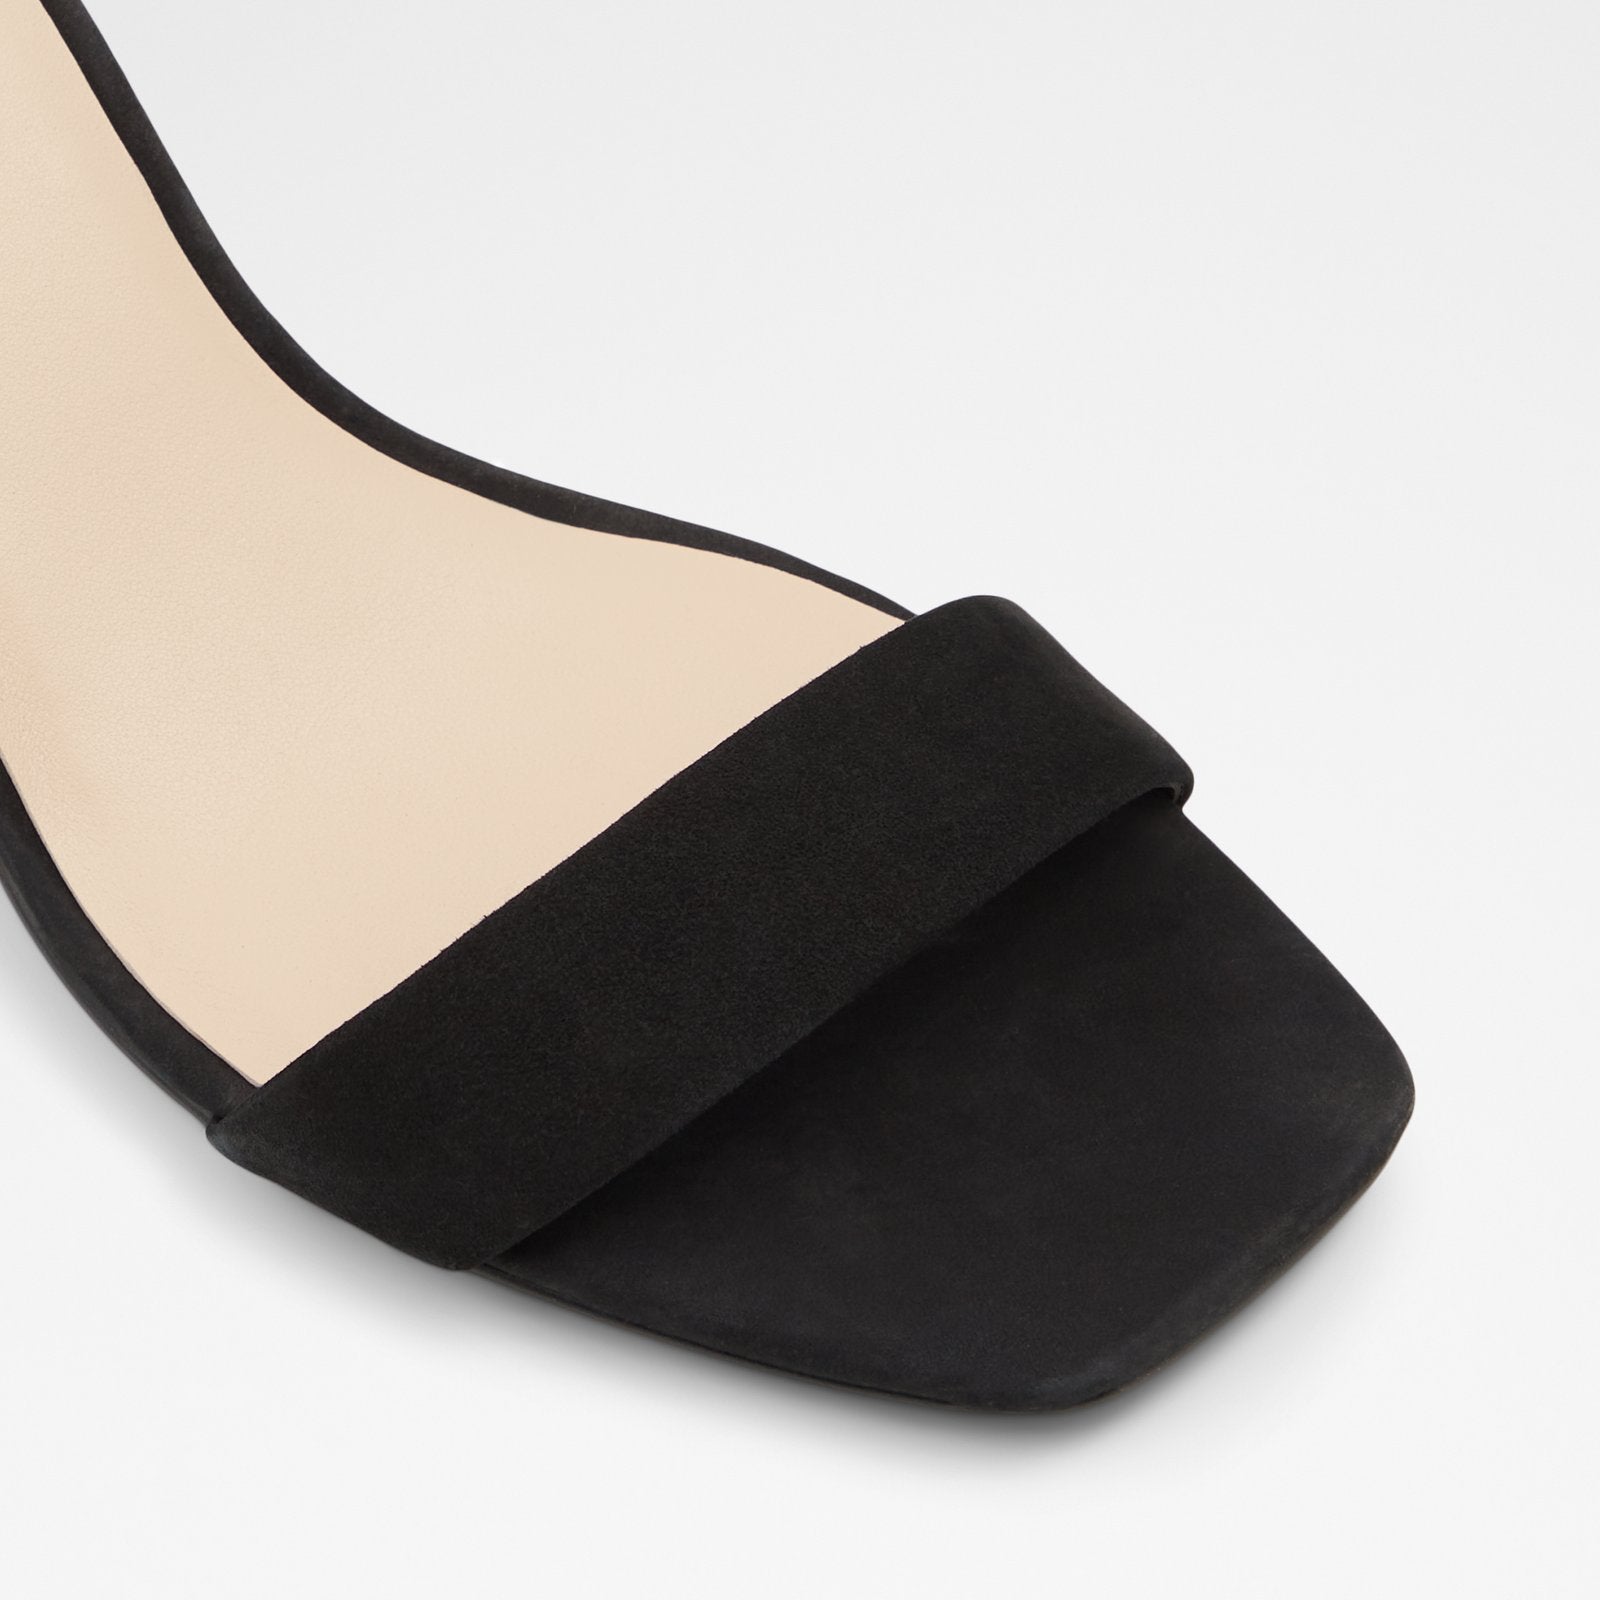 Kedeaviel Women Shoes - Black - ALDO KSA